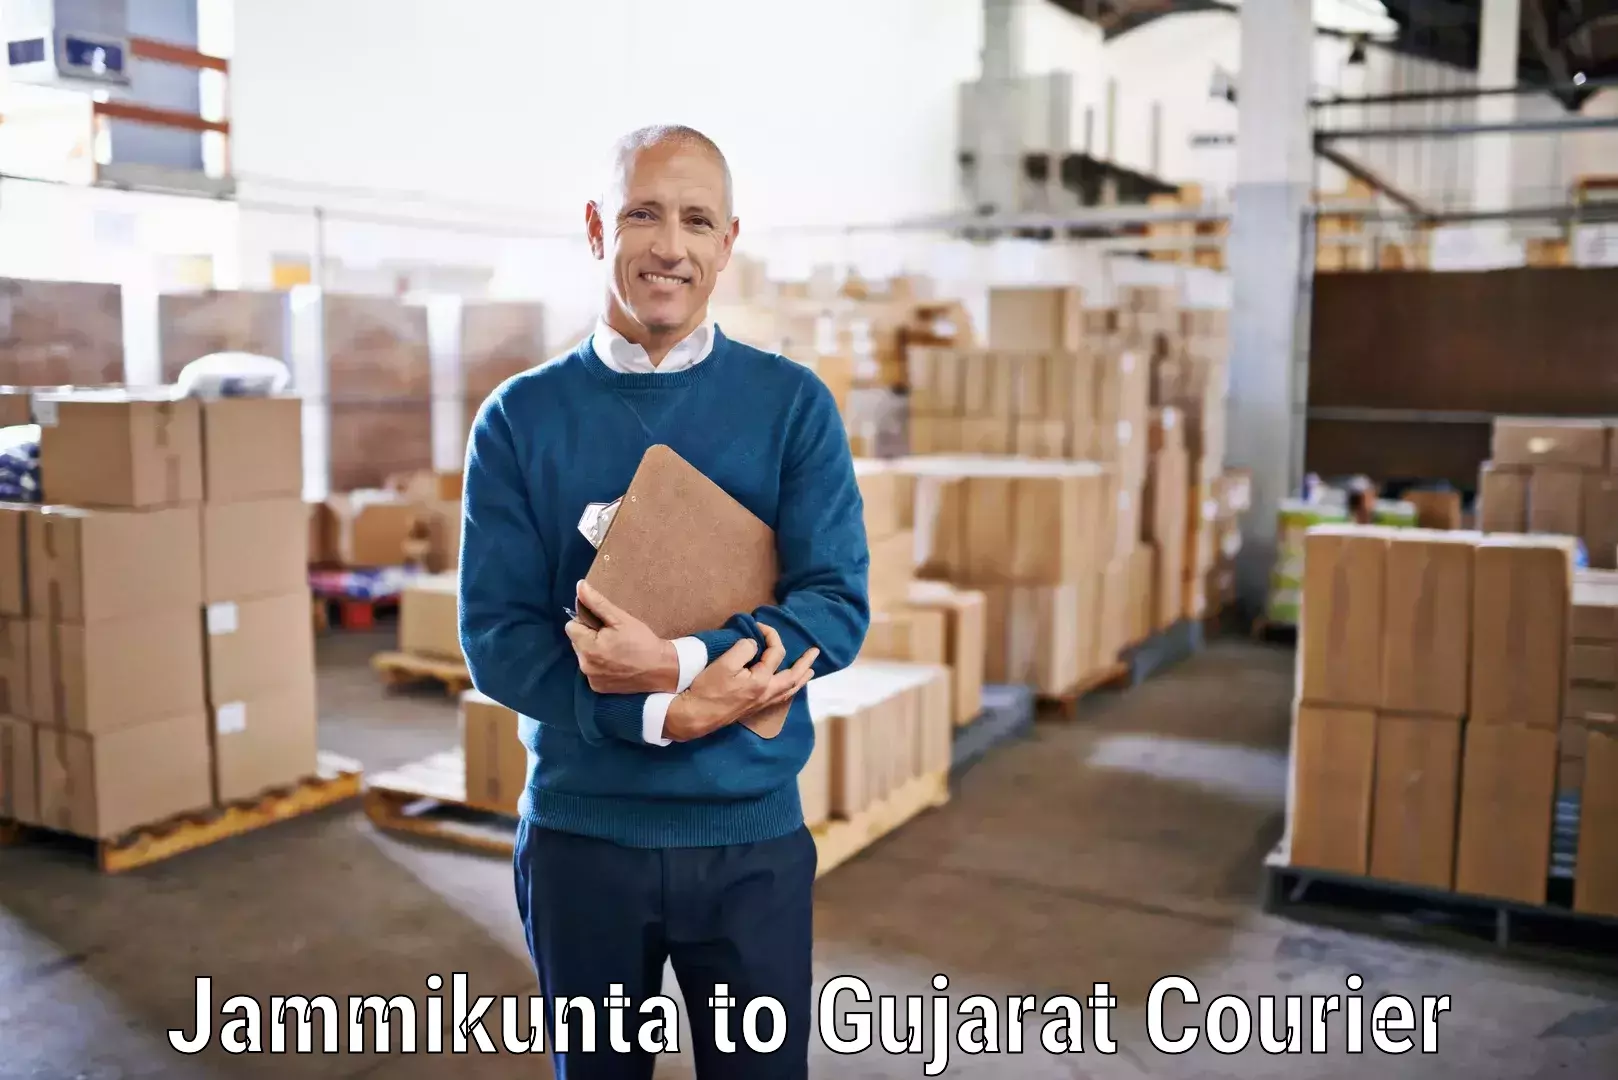 Secure shipping methods in Jammikunta to IIIT Surat